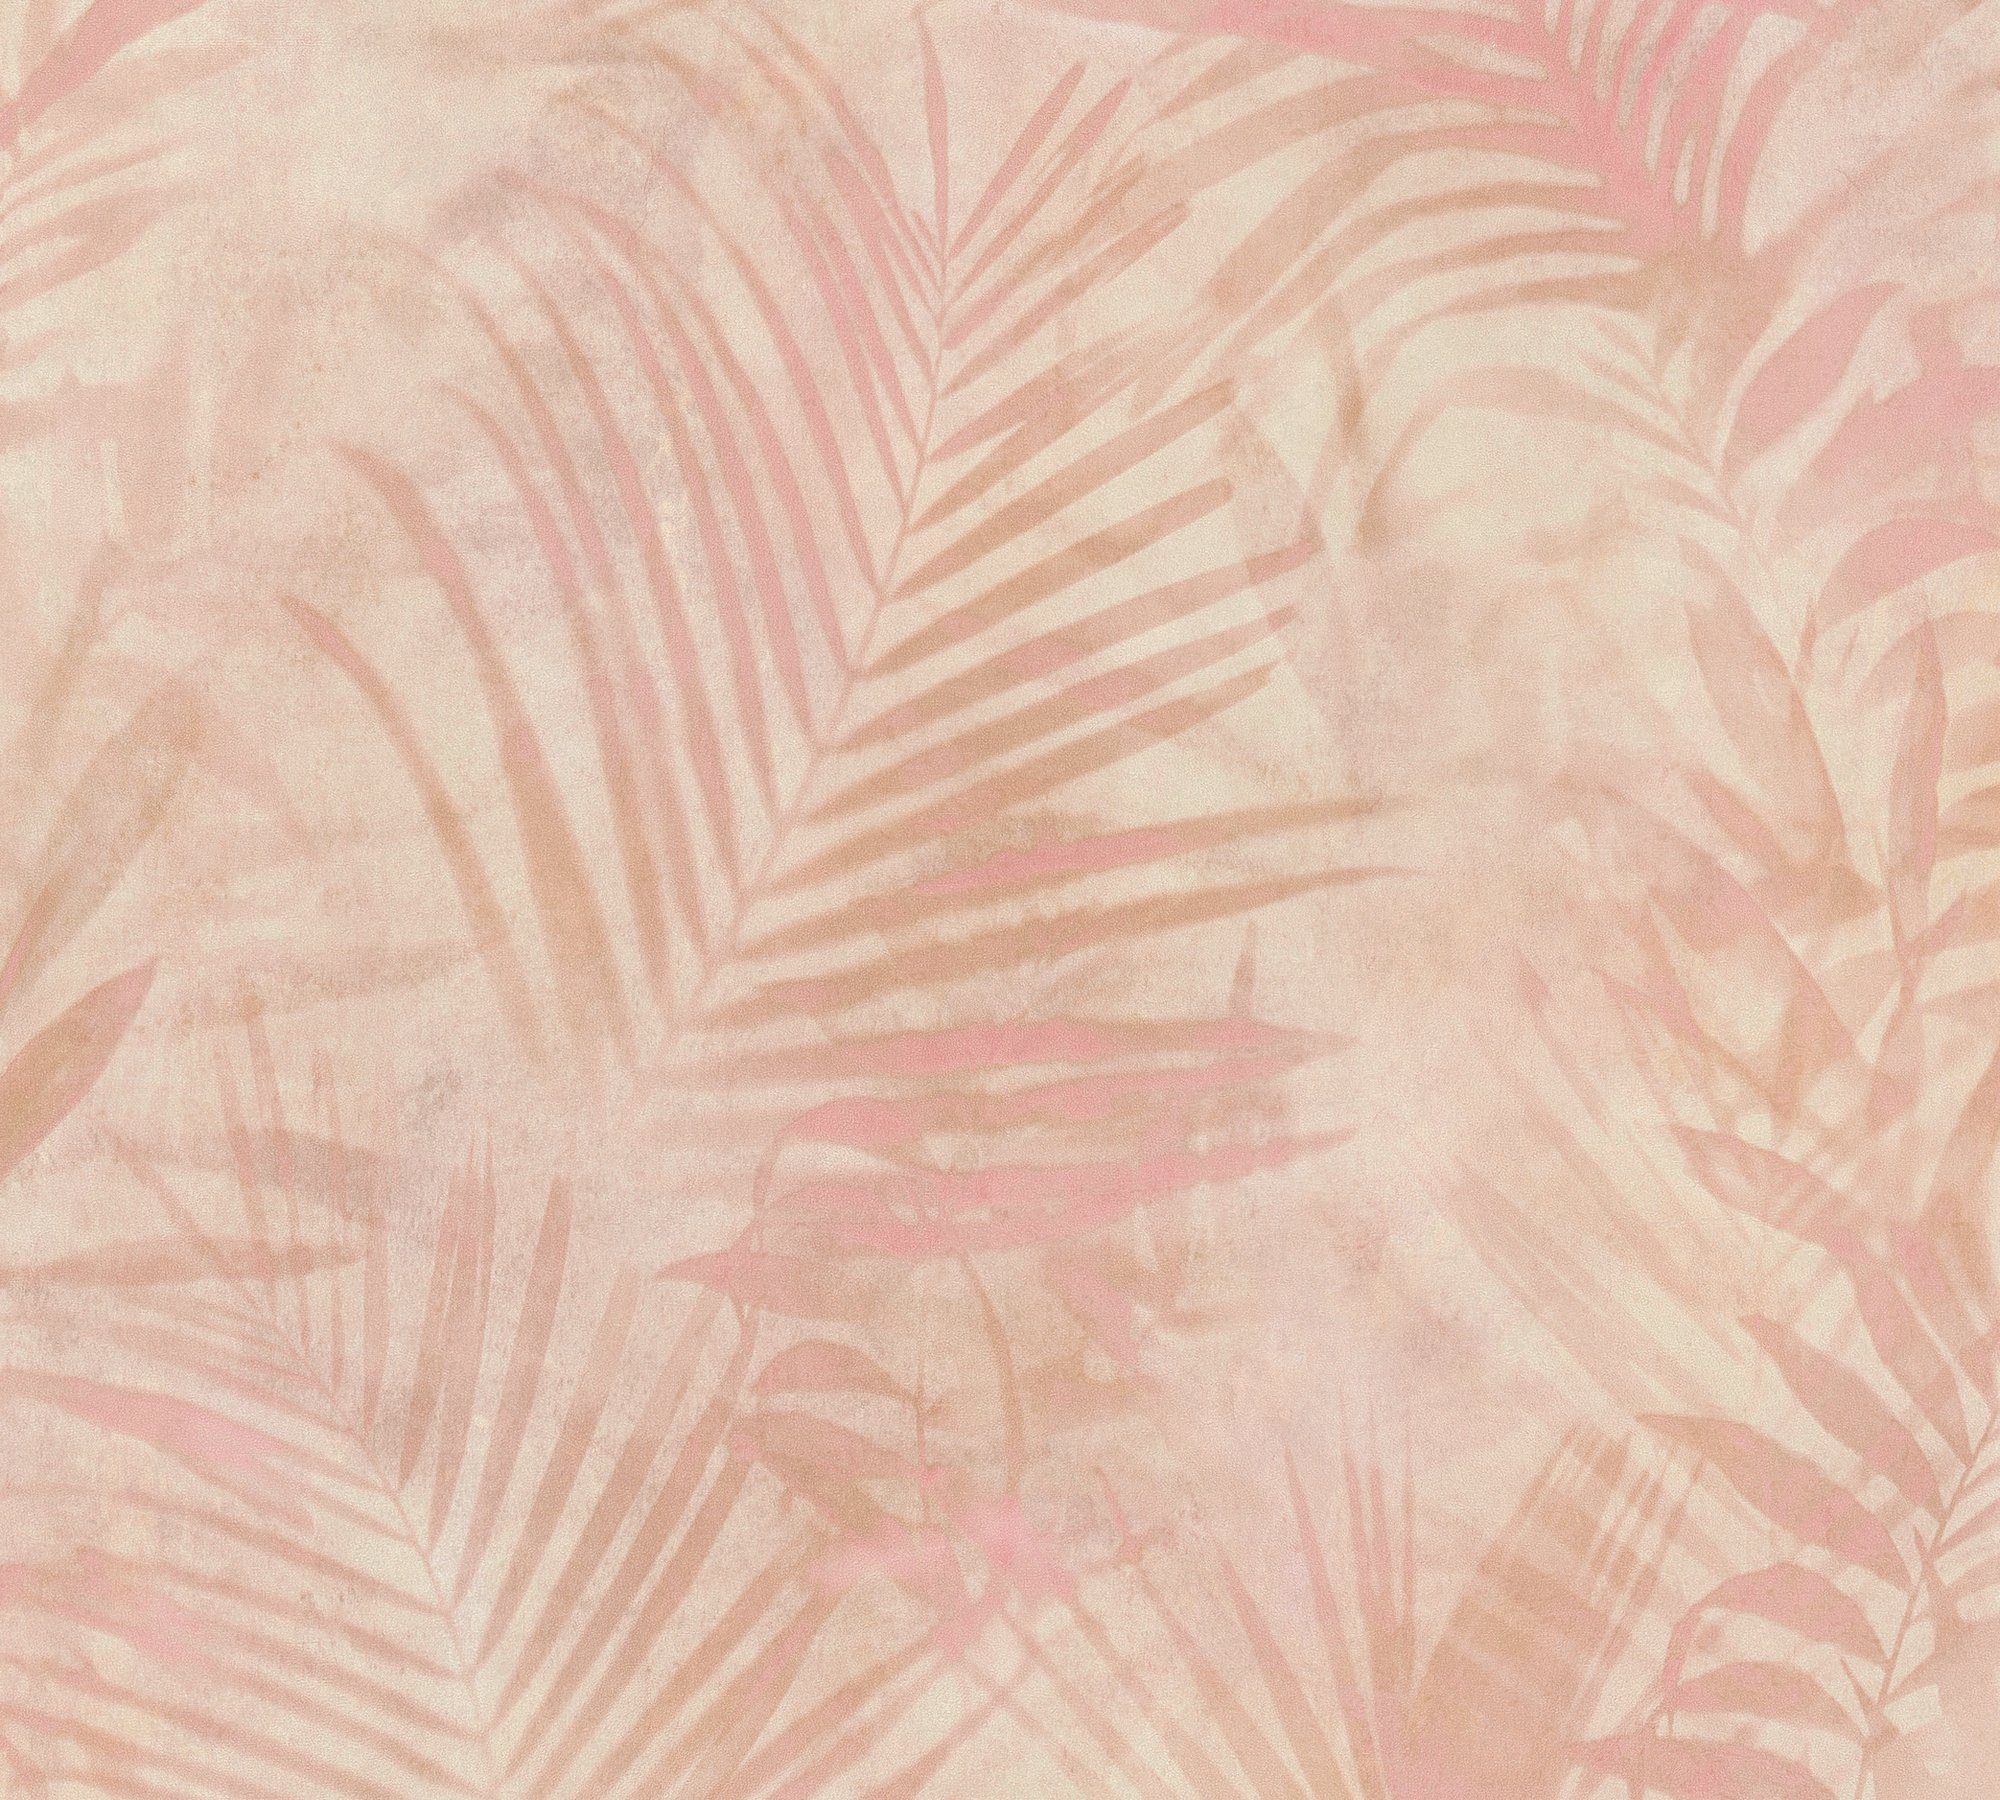 A.S. Vliestapete 2.0 mit Palmen Neue rosa Dschungeltapete Création floral, Tapete Tropical Palmenblättern, Bude Concret